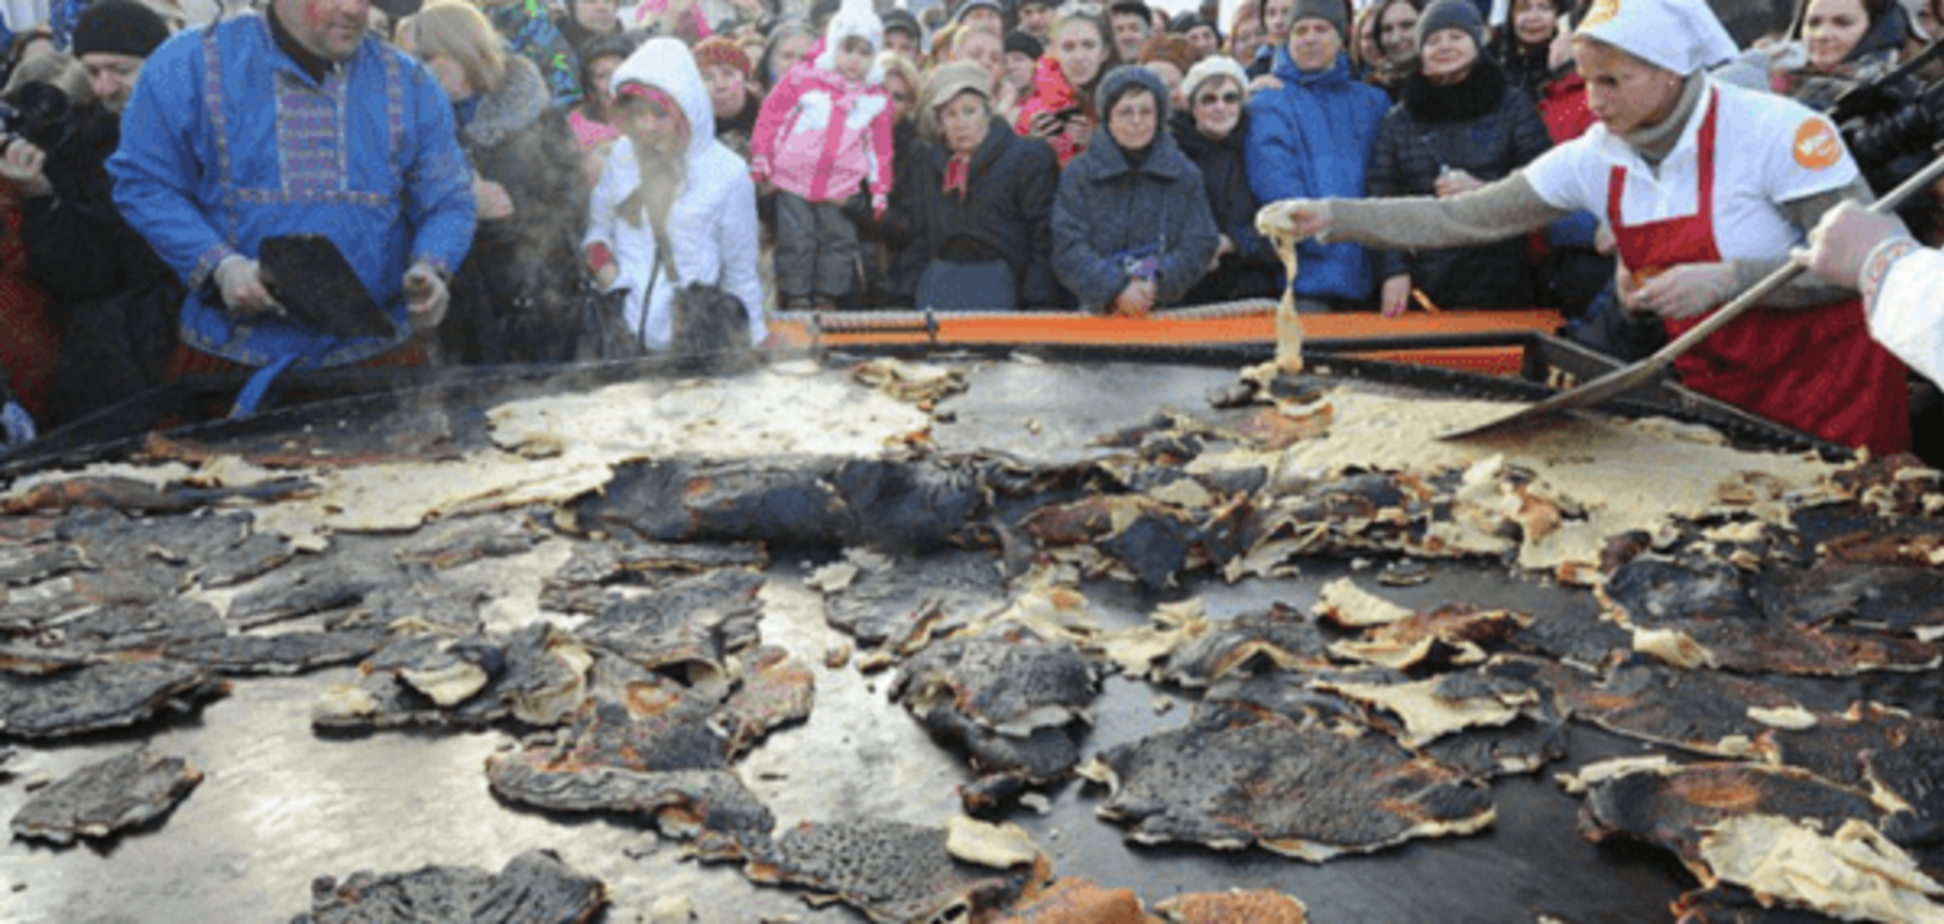 Съели 'заживо': в Москве показали горелый блин 'с лопаты' перед 'растерзанием' толпы